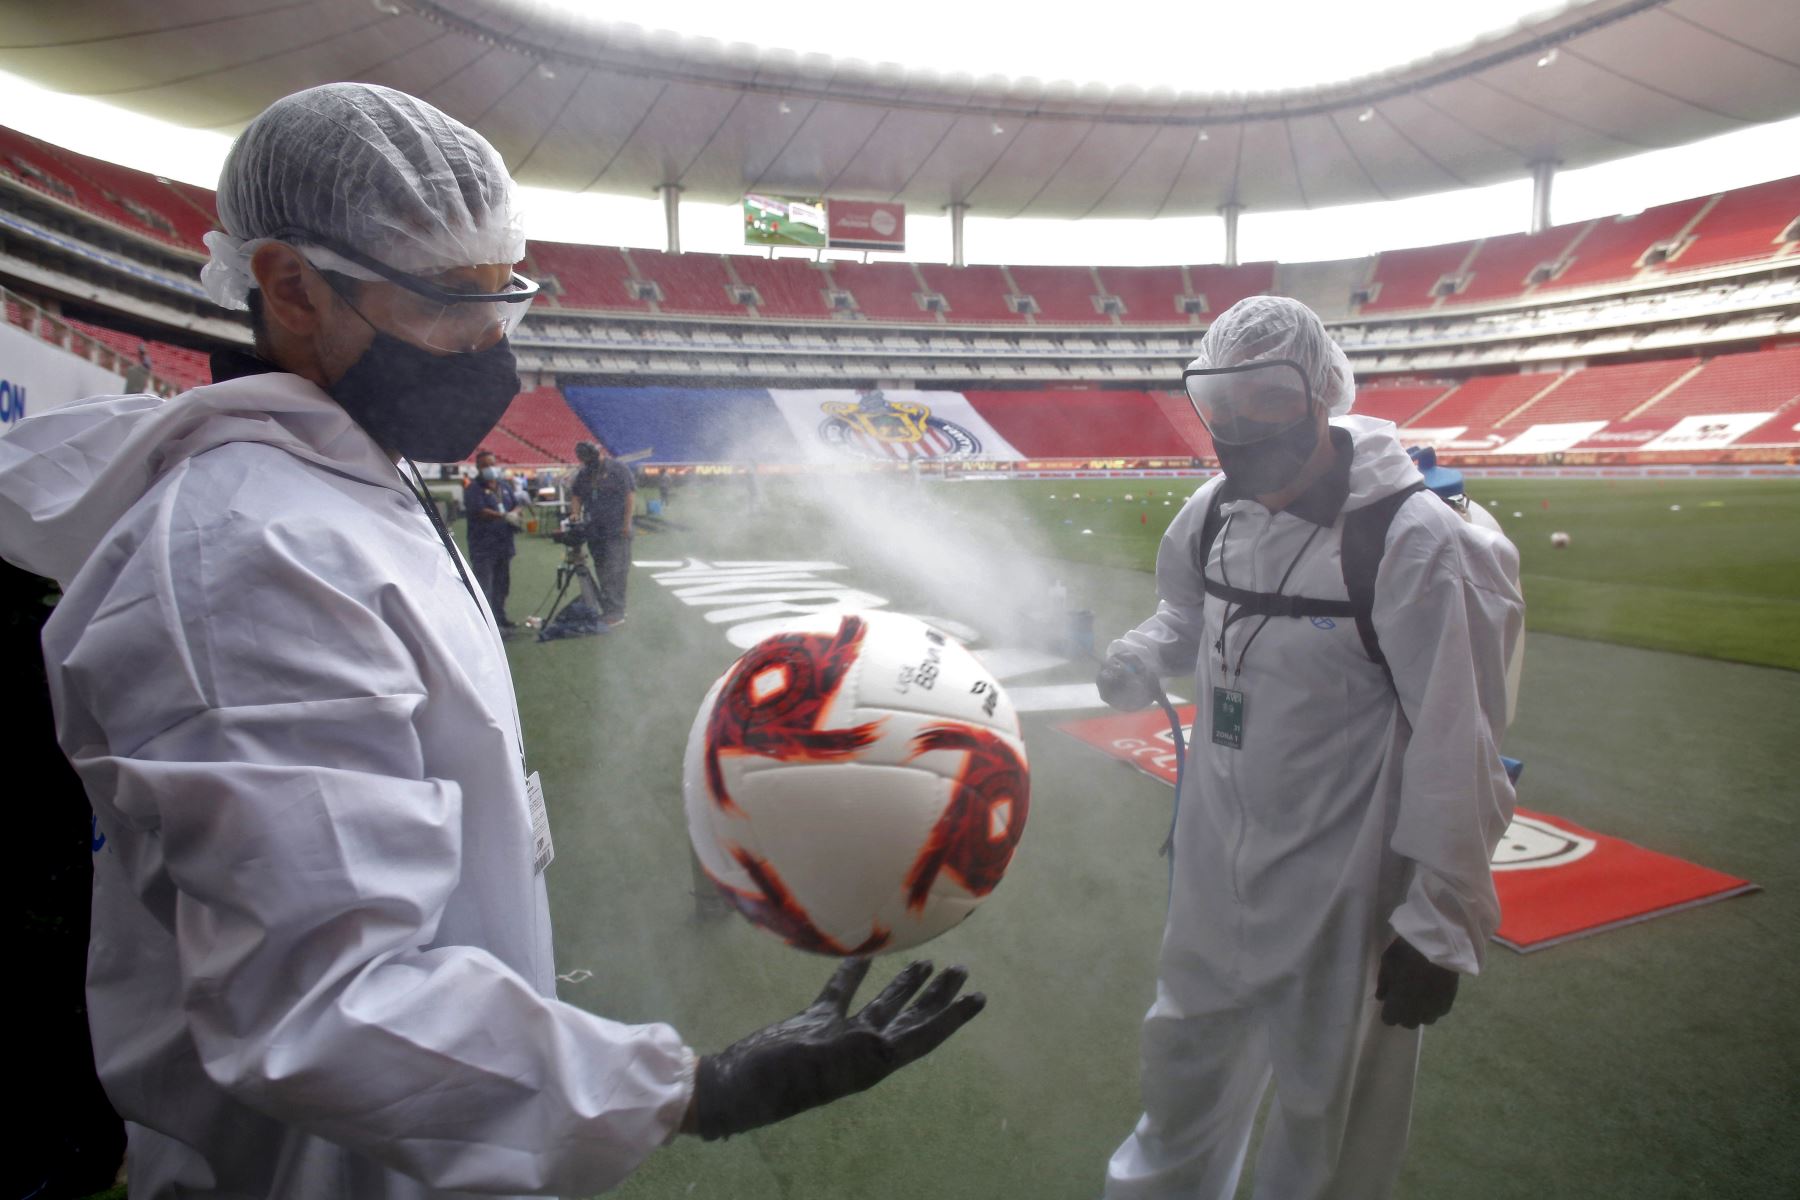 Trabajadores desinfectan balón de fútbol antes del comienzo del partido entre Guadalajara y León en el estadio Akron, en Guadalajara. Foto: AFP